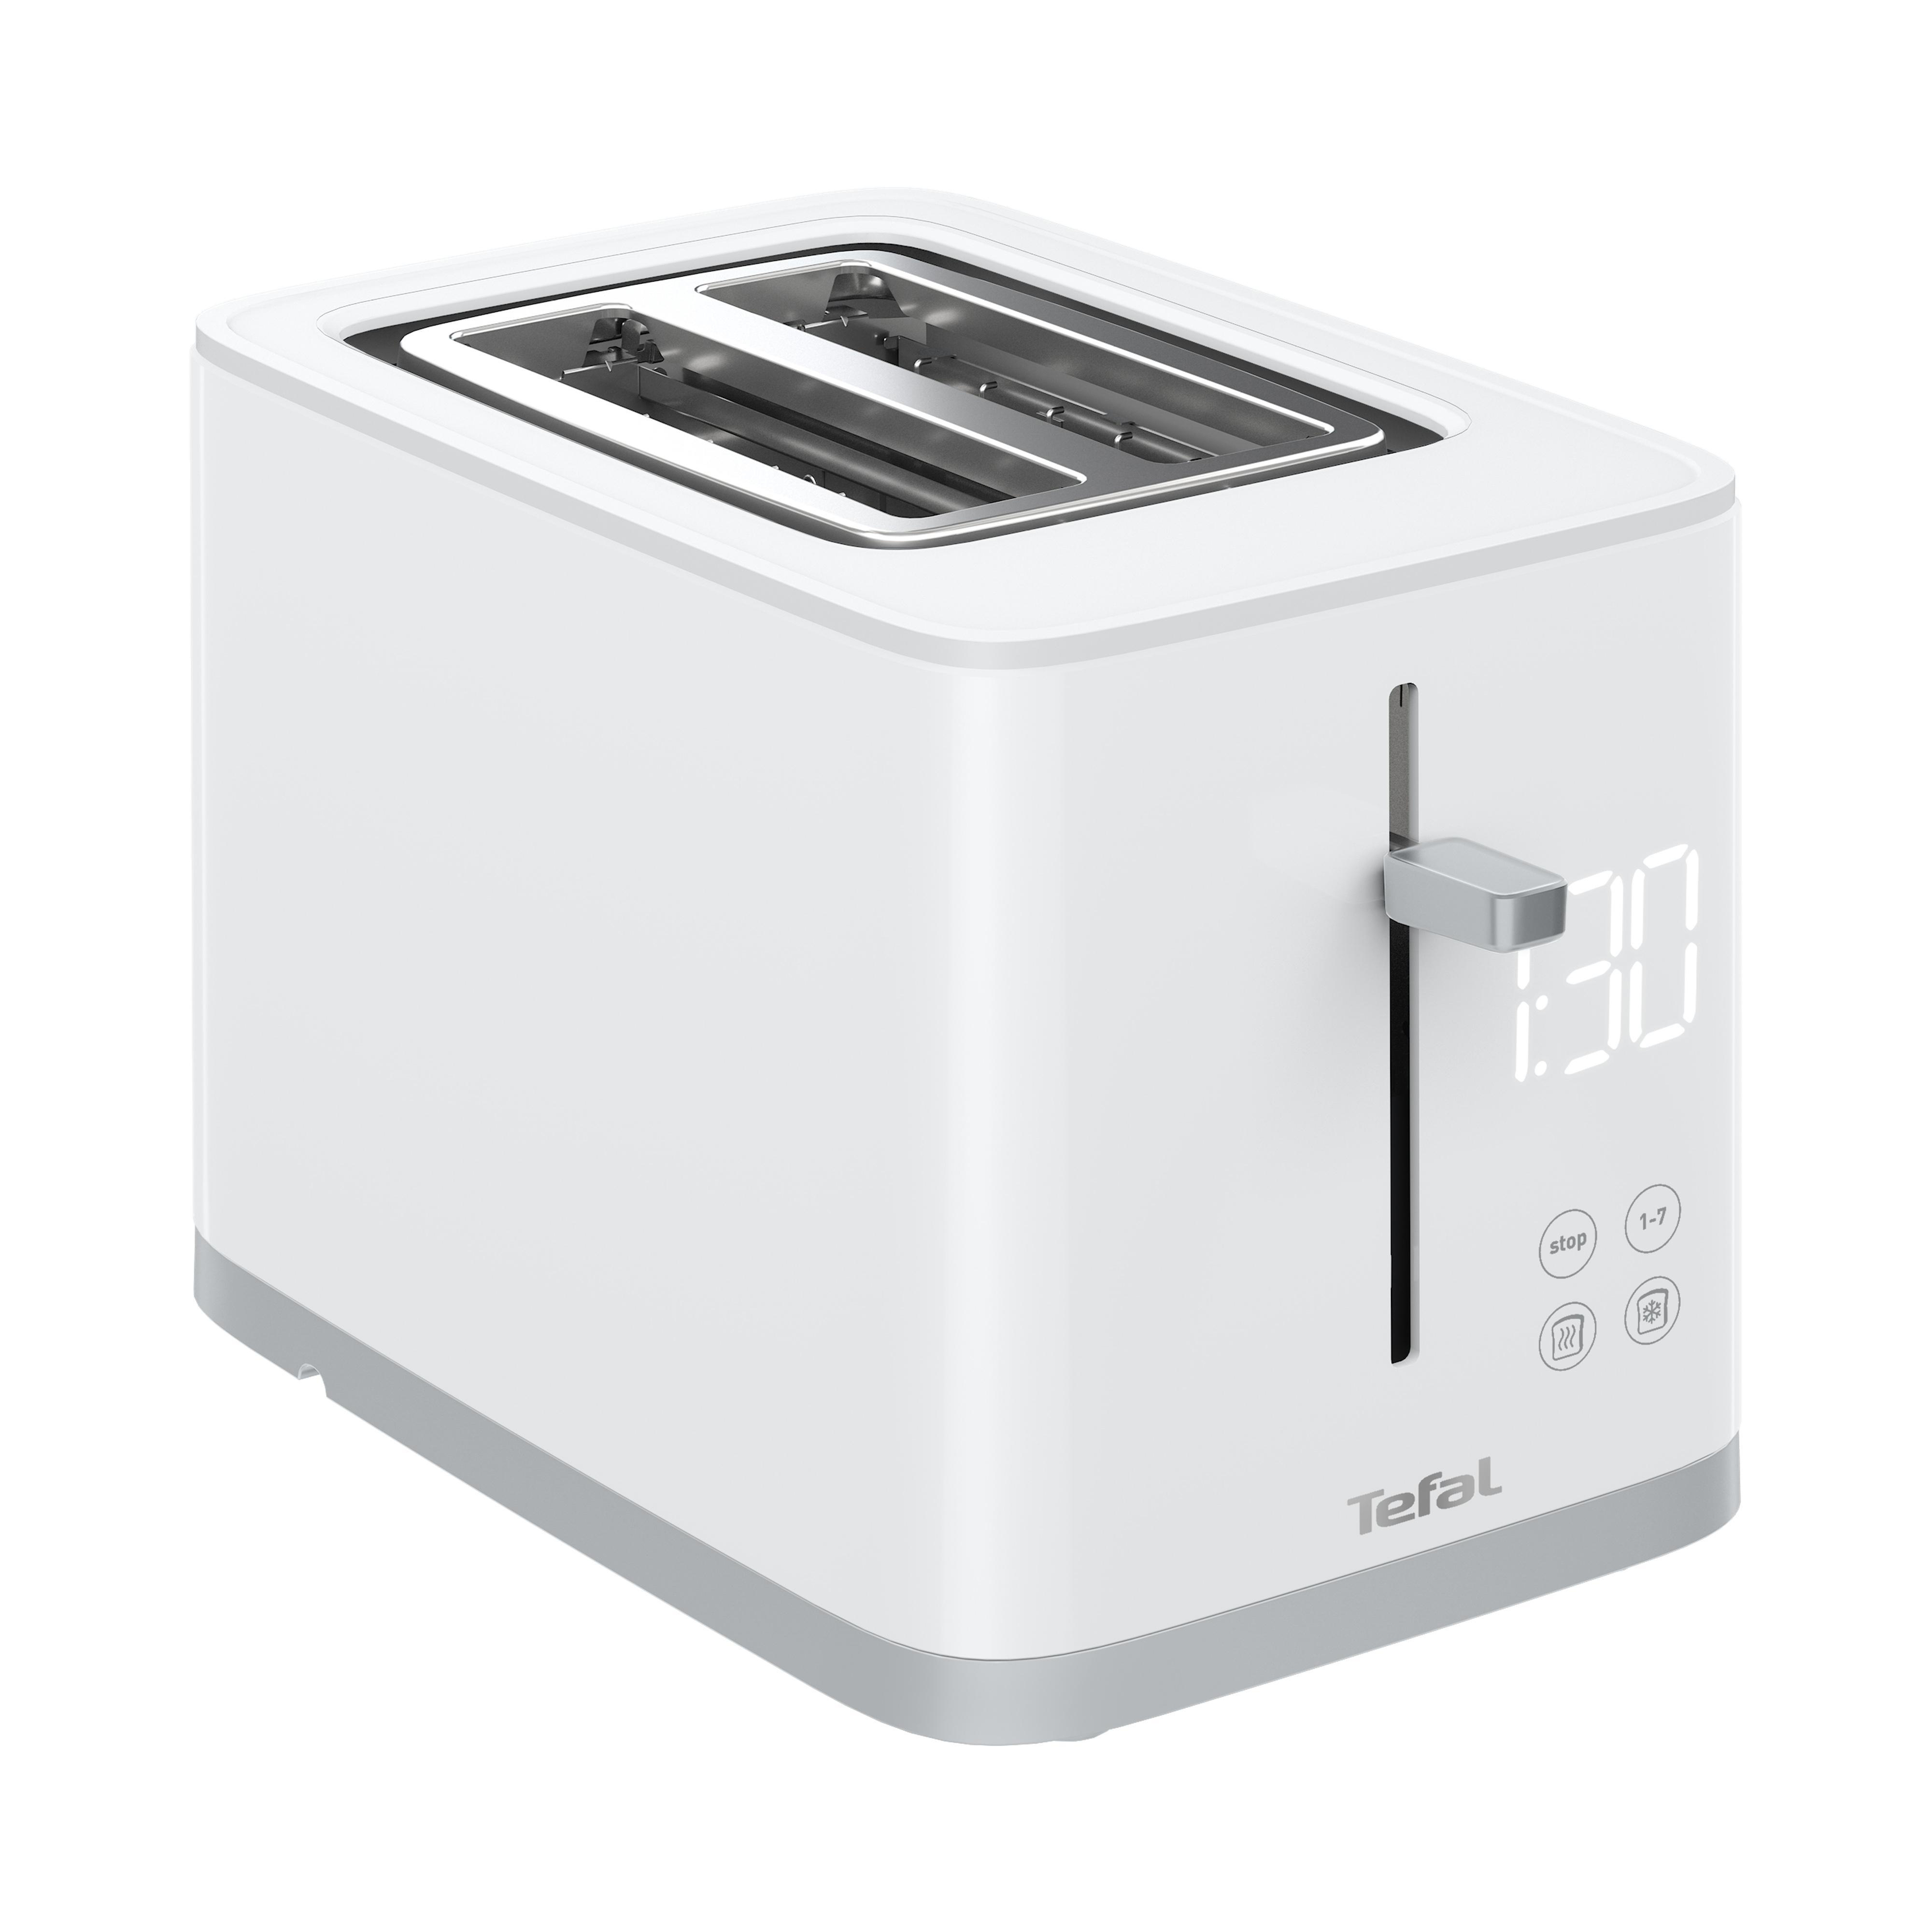 TEFAL TT6931 Sense Toaster 2) Schlitze: Watt, Weiß (850